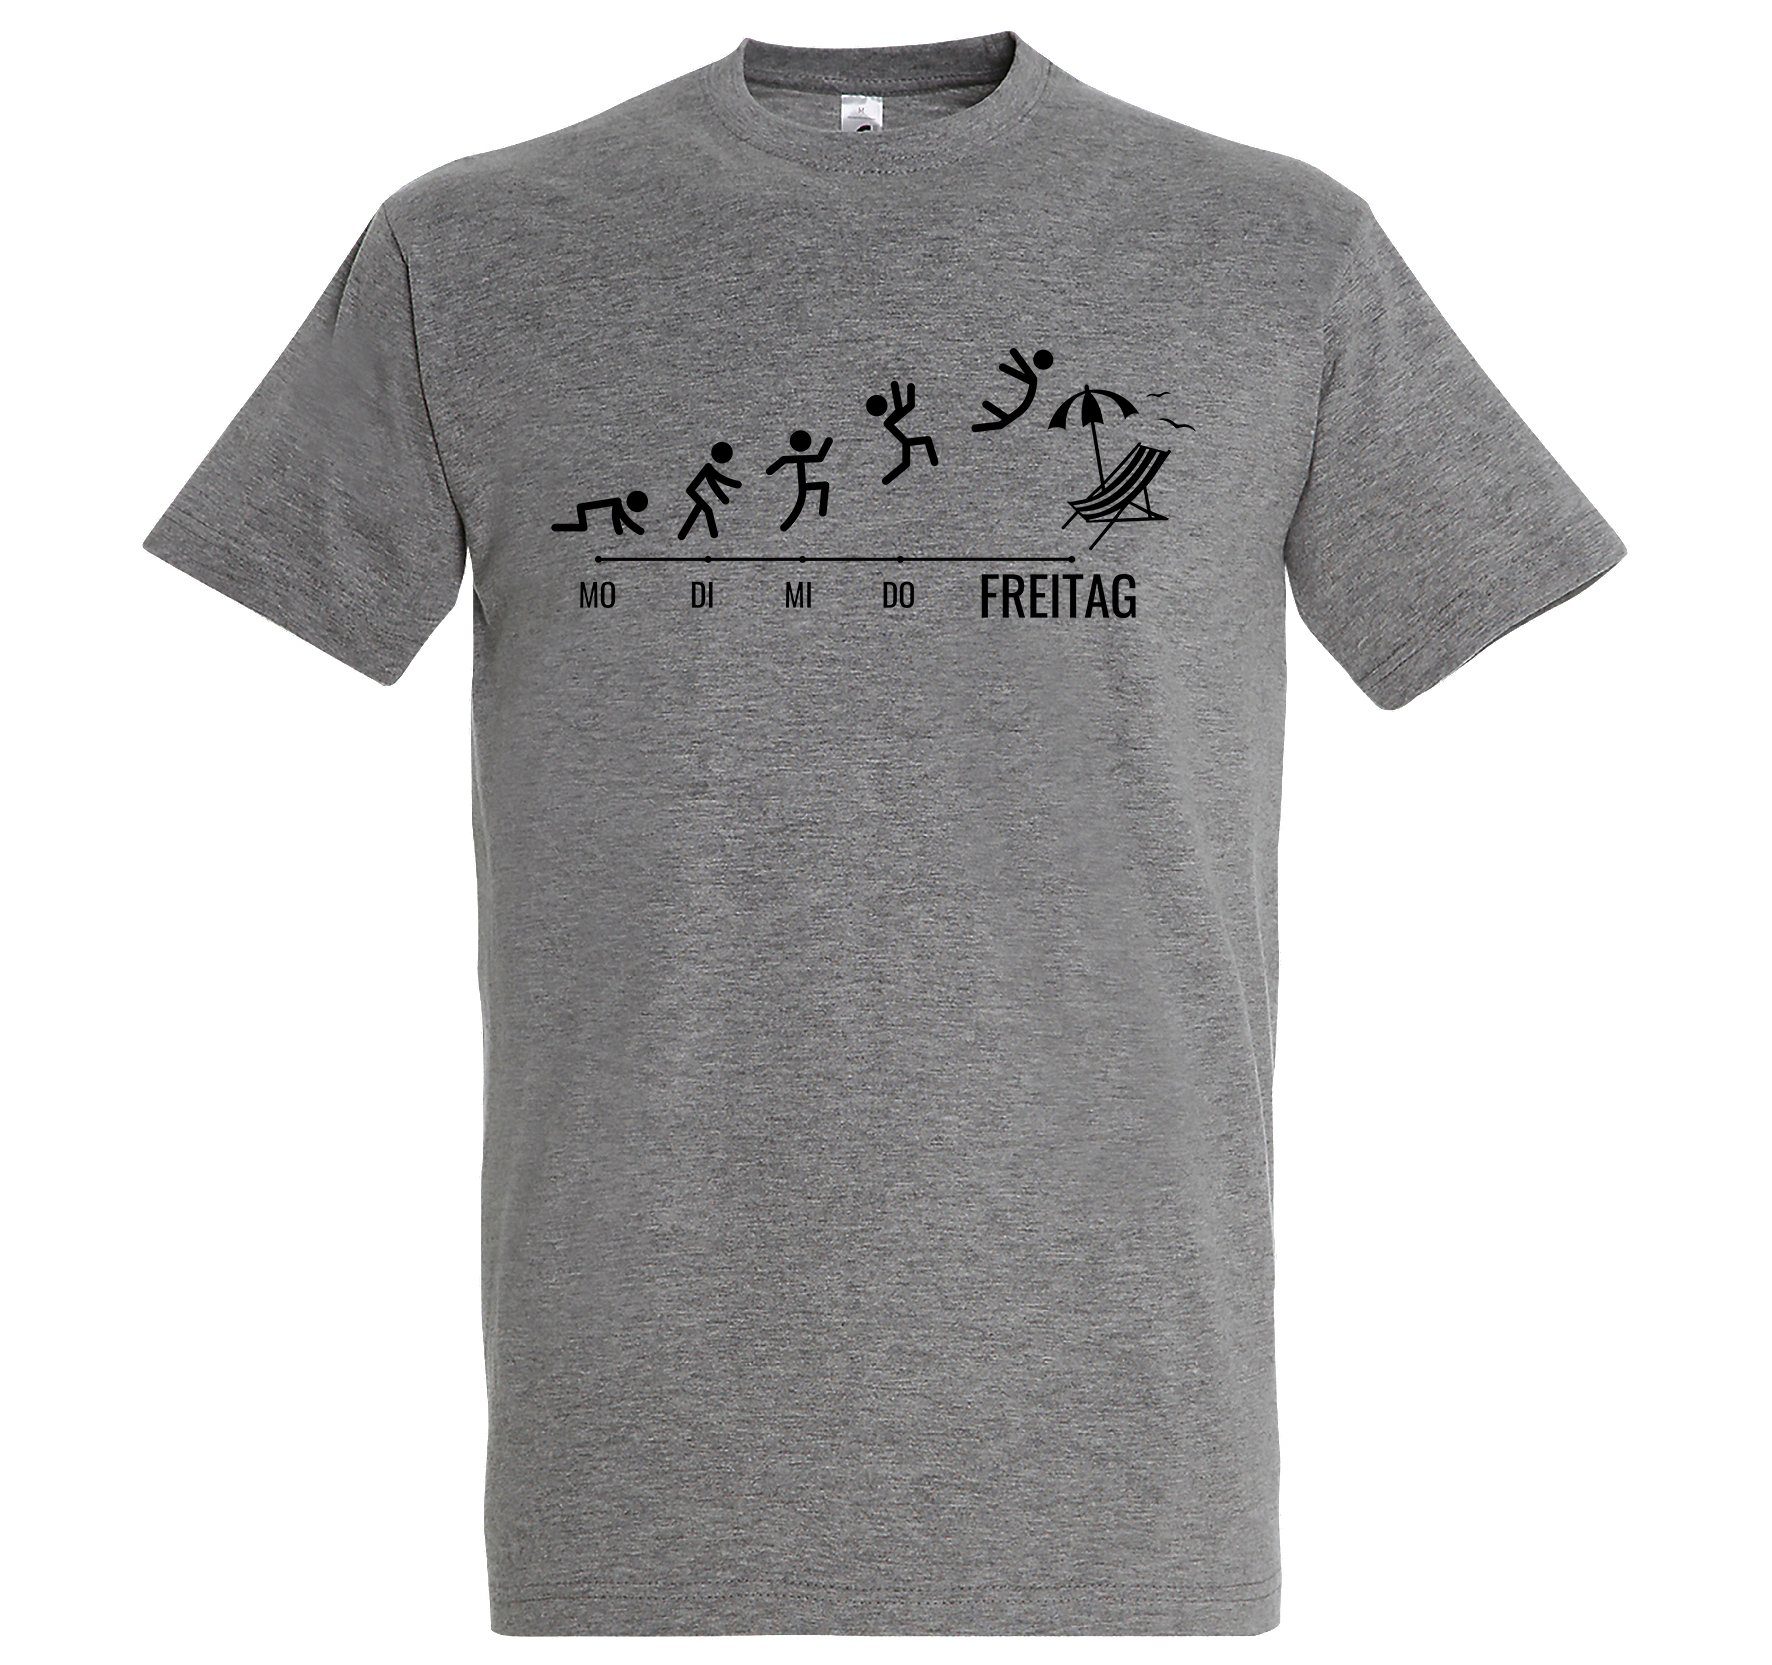 T-Shirt Shirt Frontprint Herren lustigem Youth mit Designz Grau Wochenende Freitag